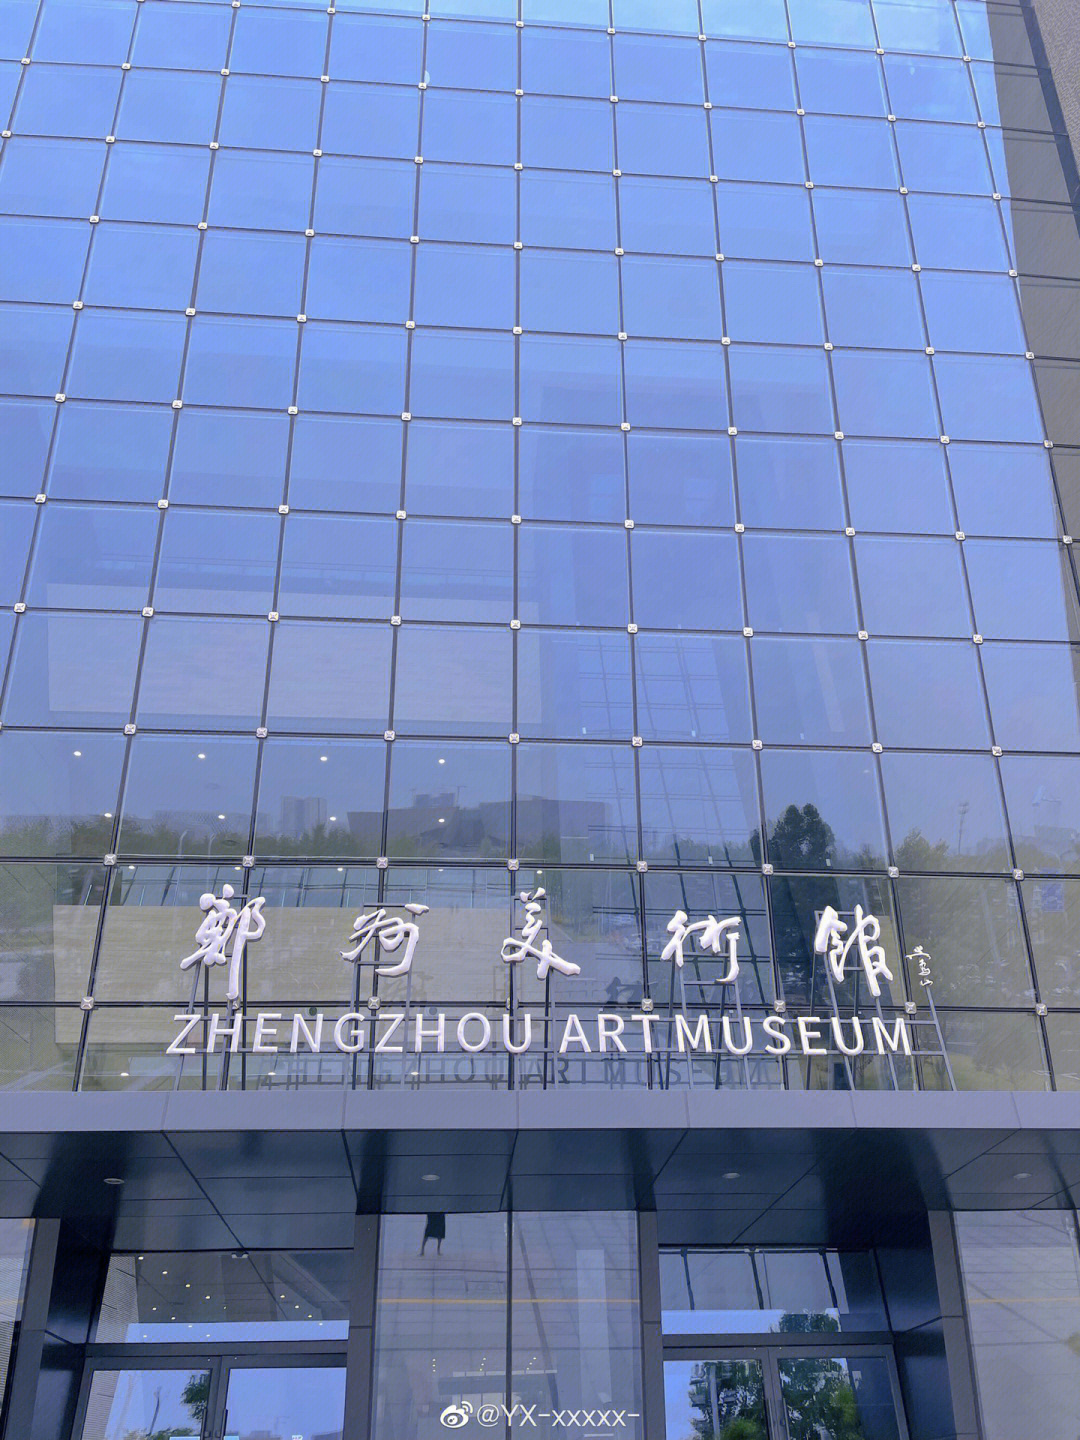 有展览 随便一拍都是满满的高级感 我去的是郑州美术馆新馆 具体位置